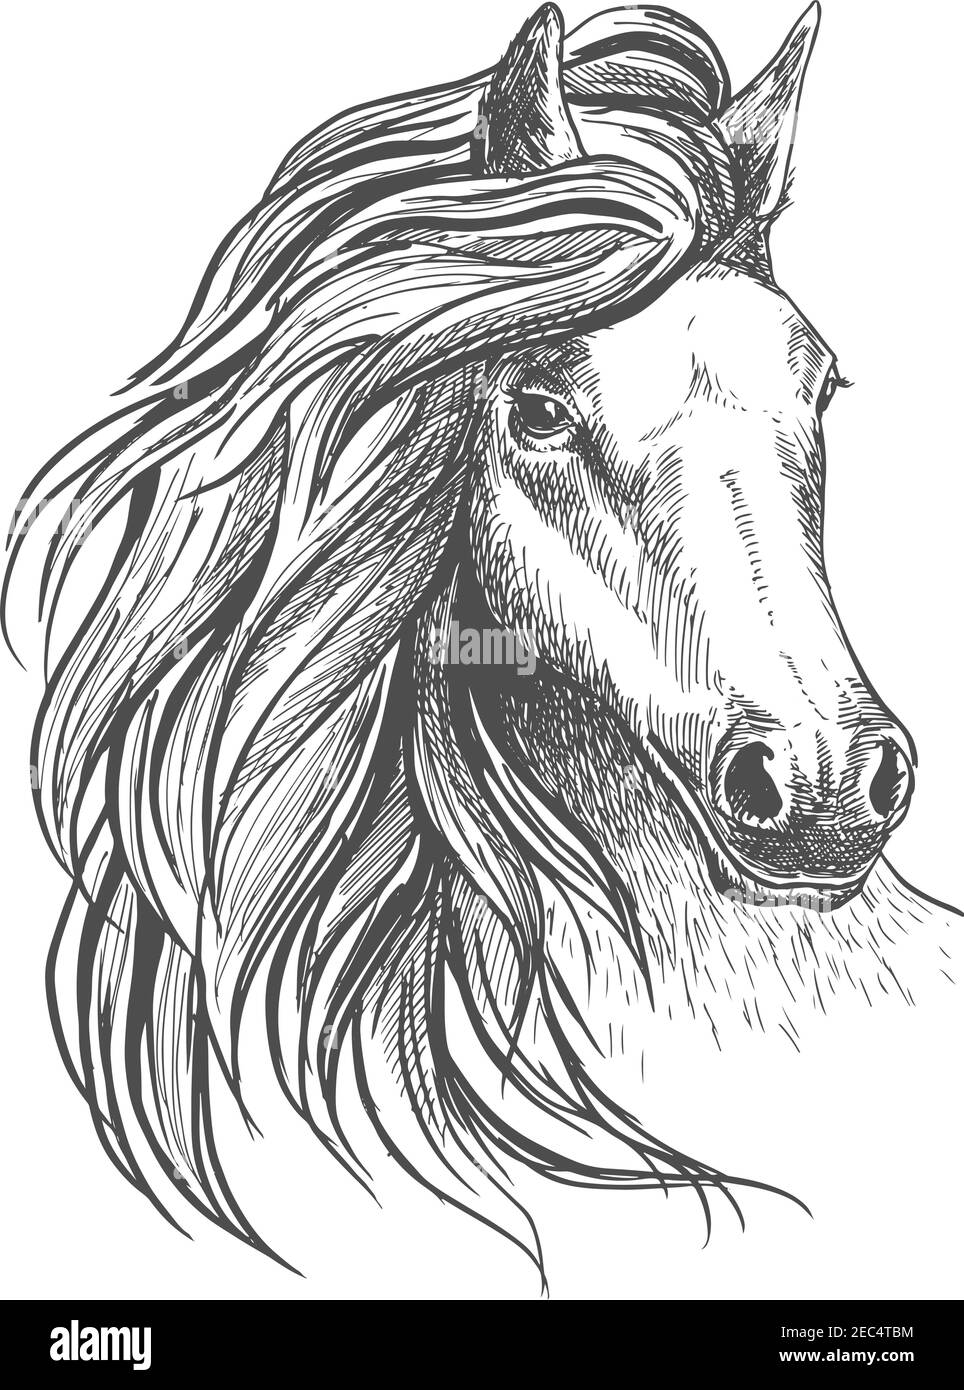 Skizze des Pferdekopfes mit glorreicher welliger Mähne und ruhiger Optik, verspieltem Blick und elegantem Hals. Isoliert auf Weiß. Für Pferdesport-Design Stock Vektor